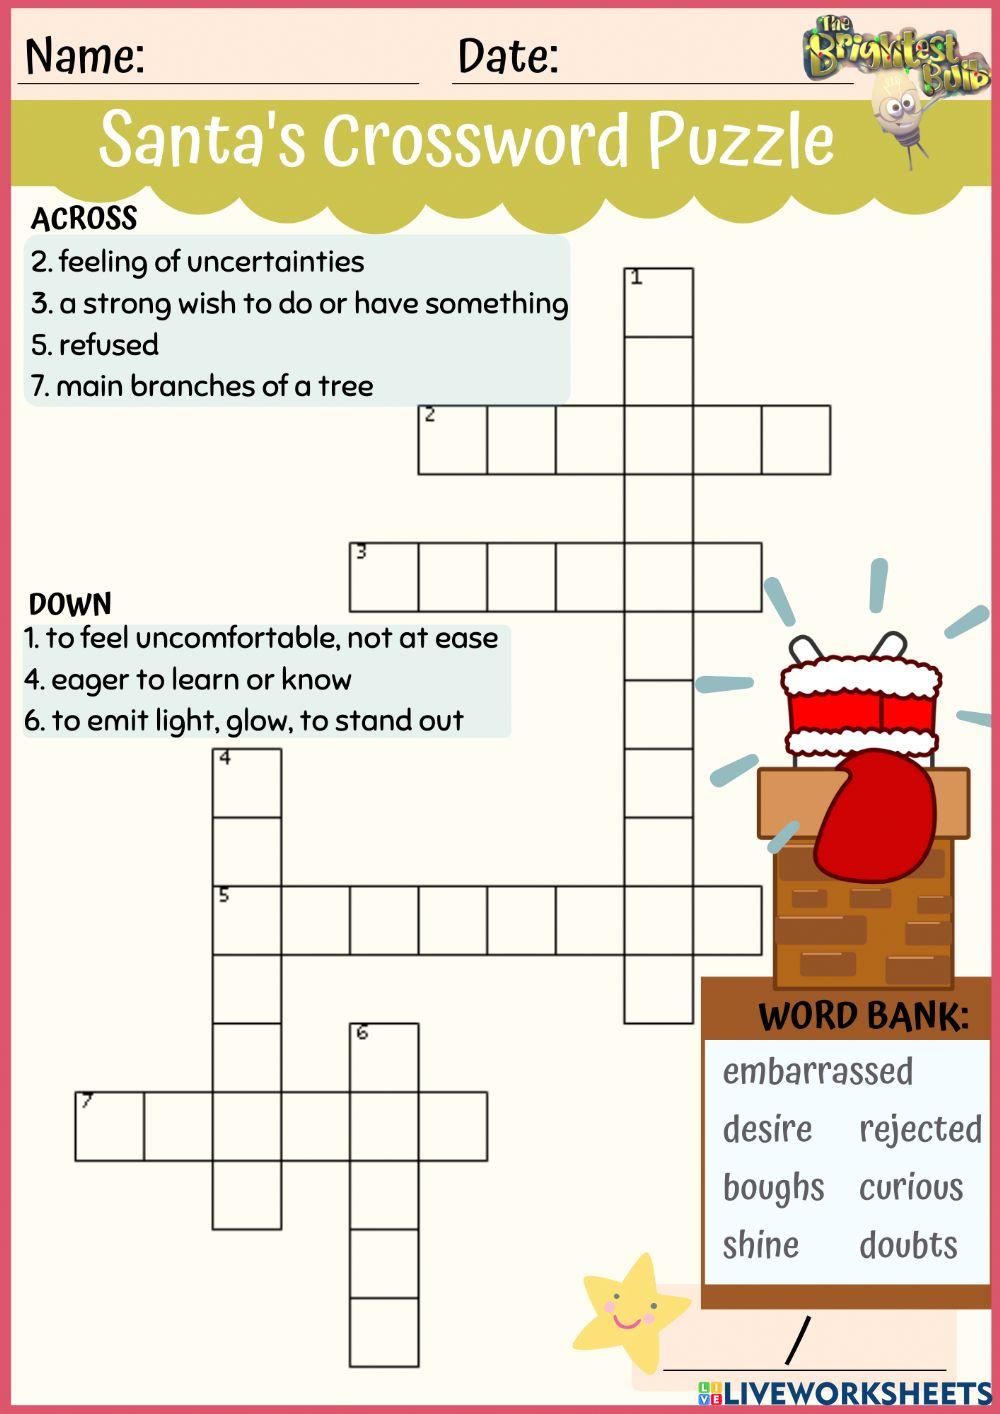 Santa's Crossword Puzzle worksheet | Live Worksheets